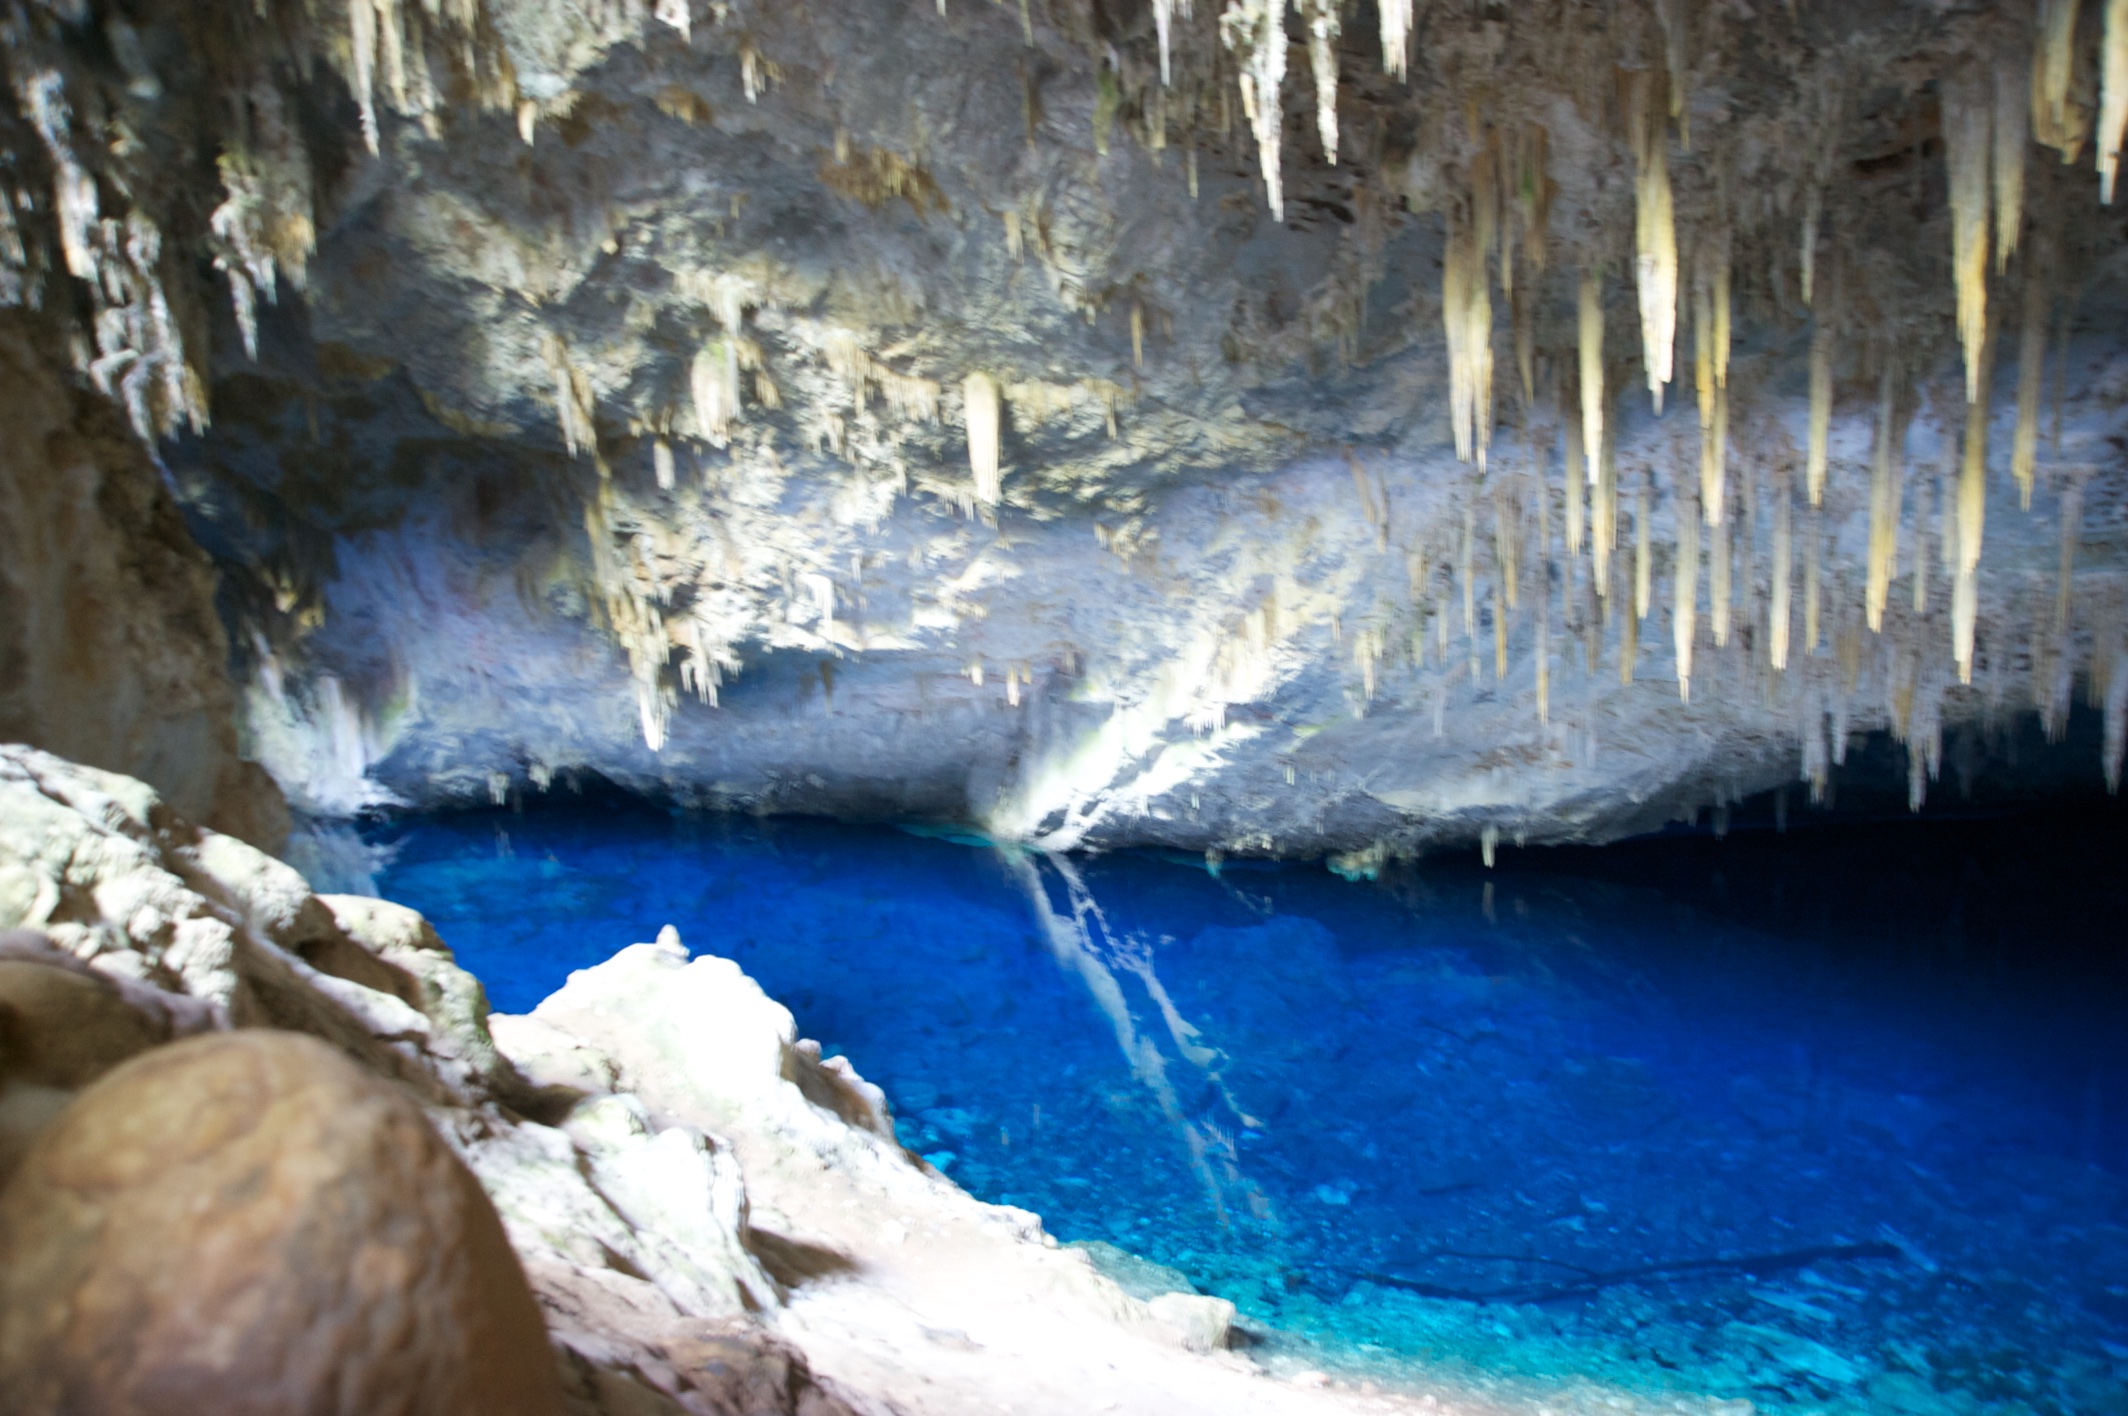  Gruta do Lago Azul, Blue Lagoon Cave, Bonito, Brazil 